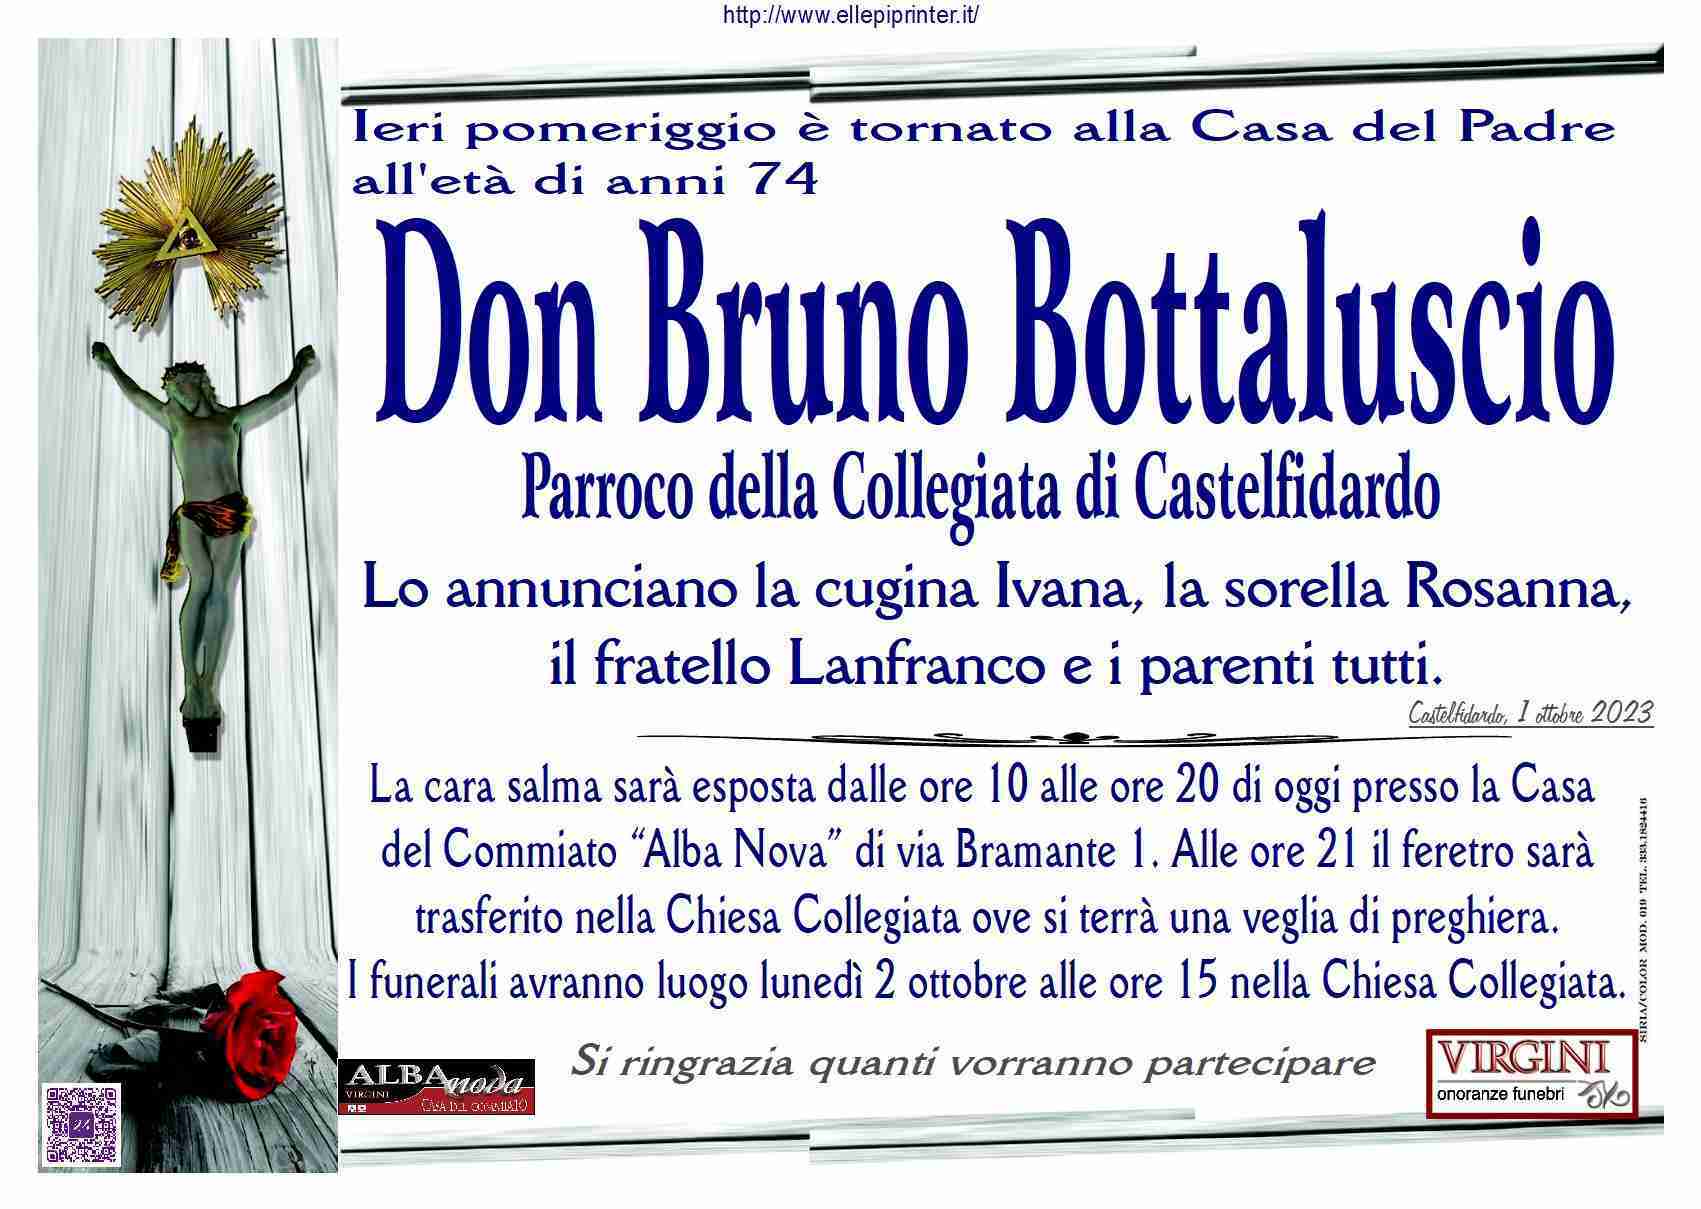 Bruno Bottaluscio